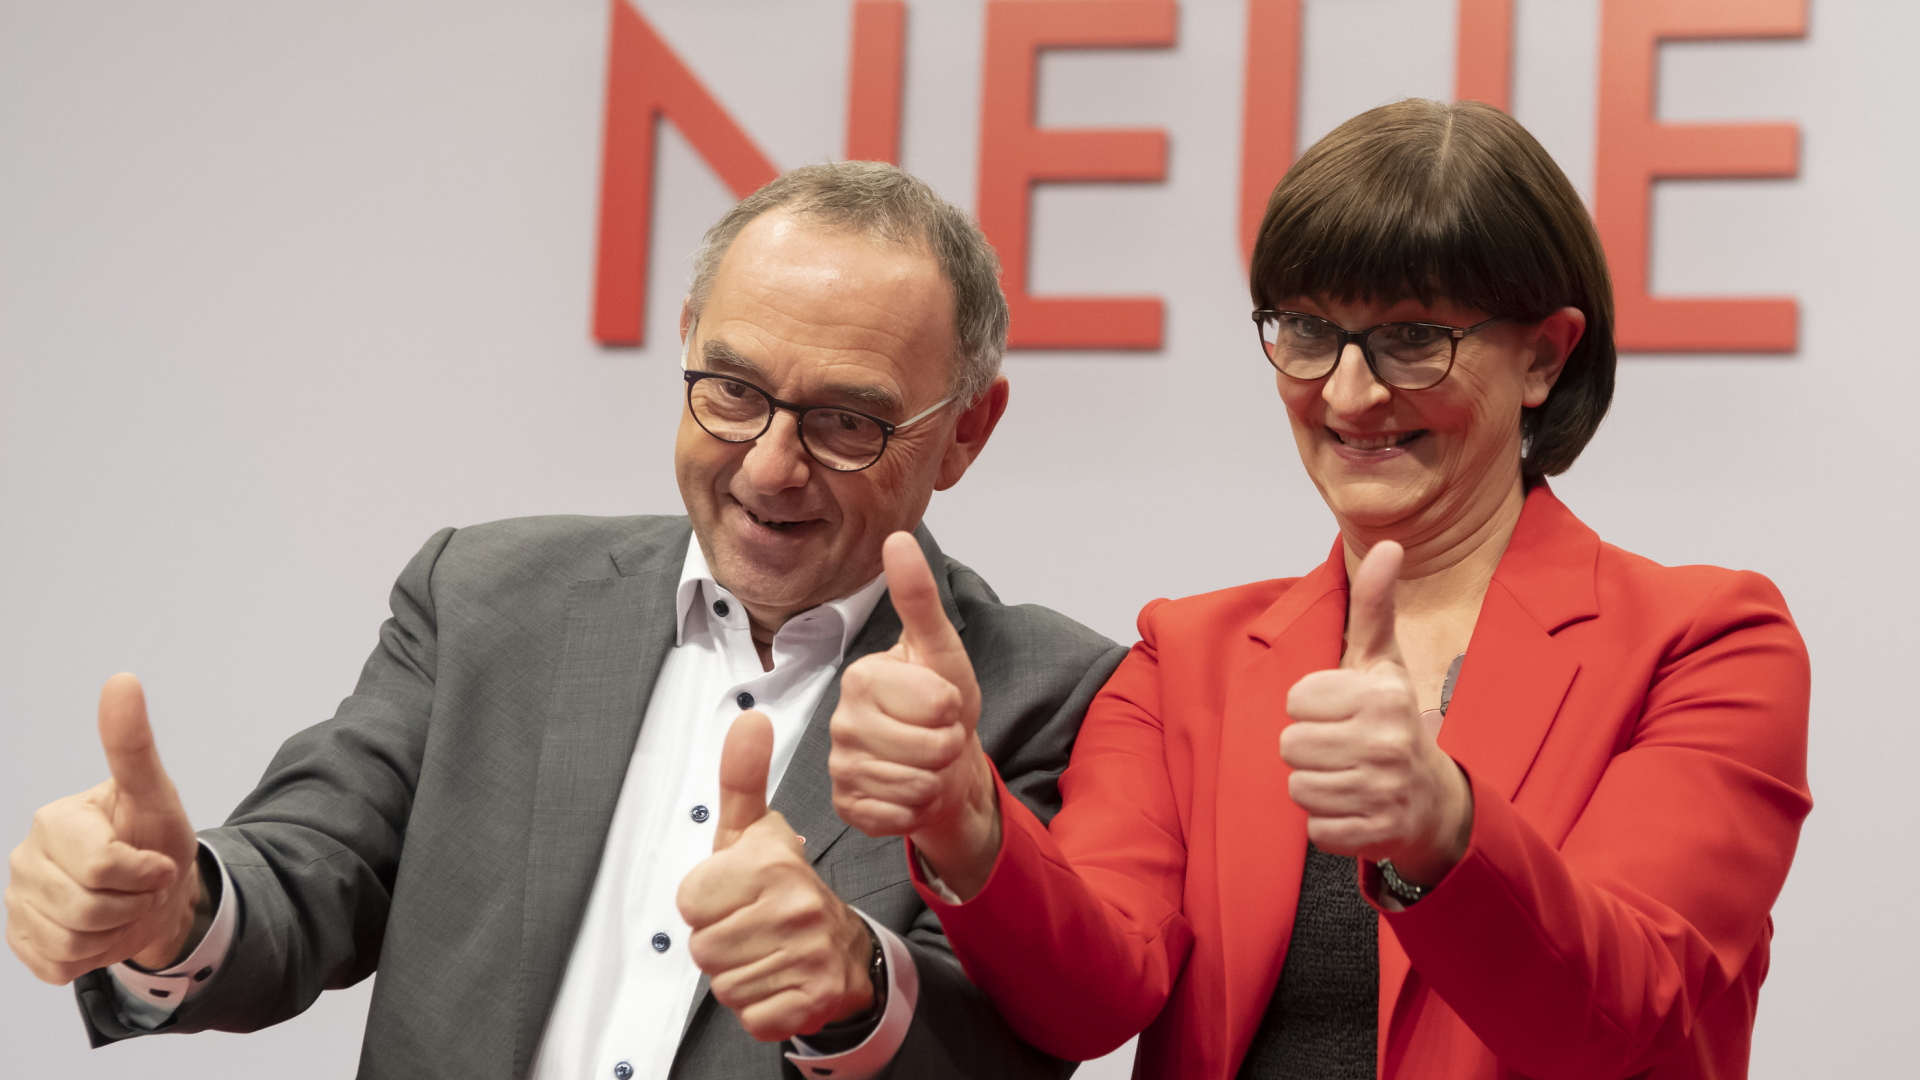 Saskia Esken und Norbert Walter-Borjans auf dem SPD-Parteitag | AP